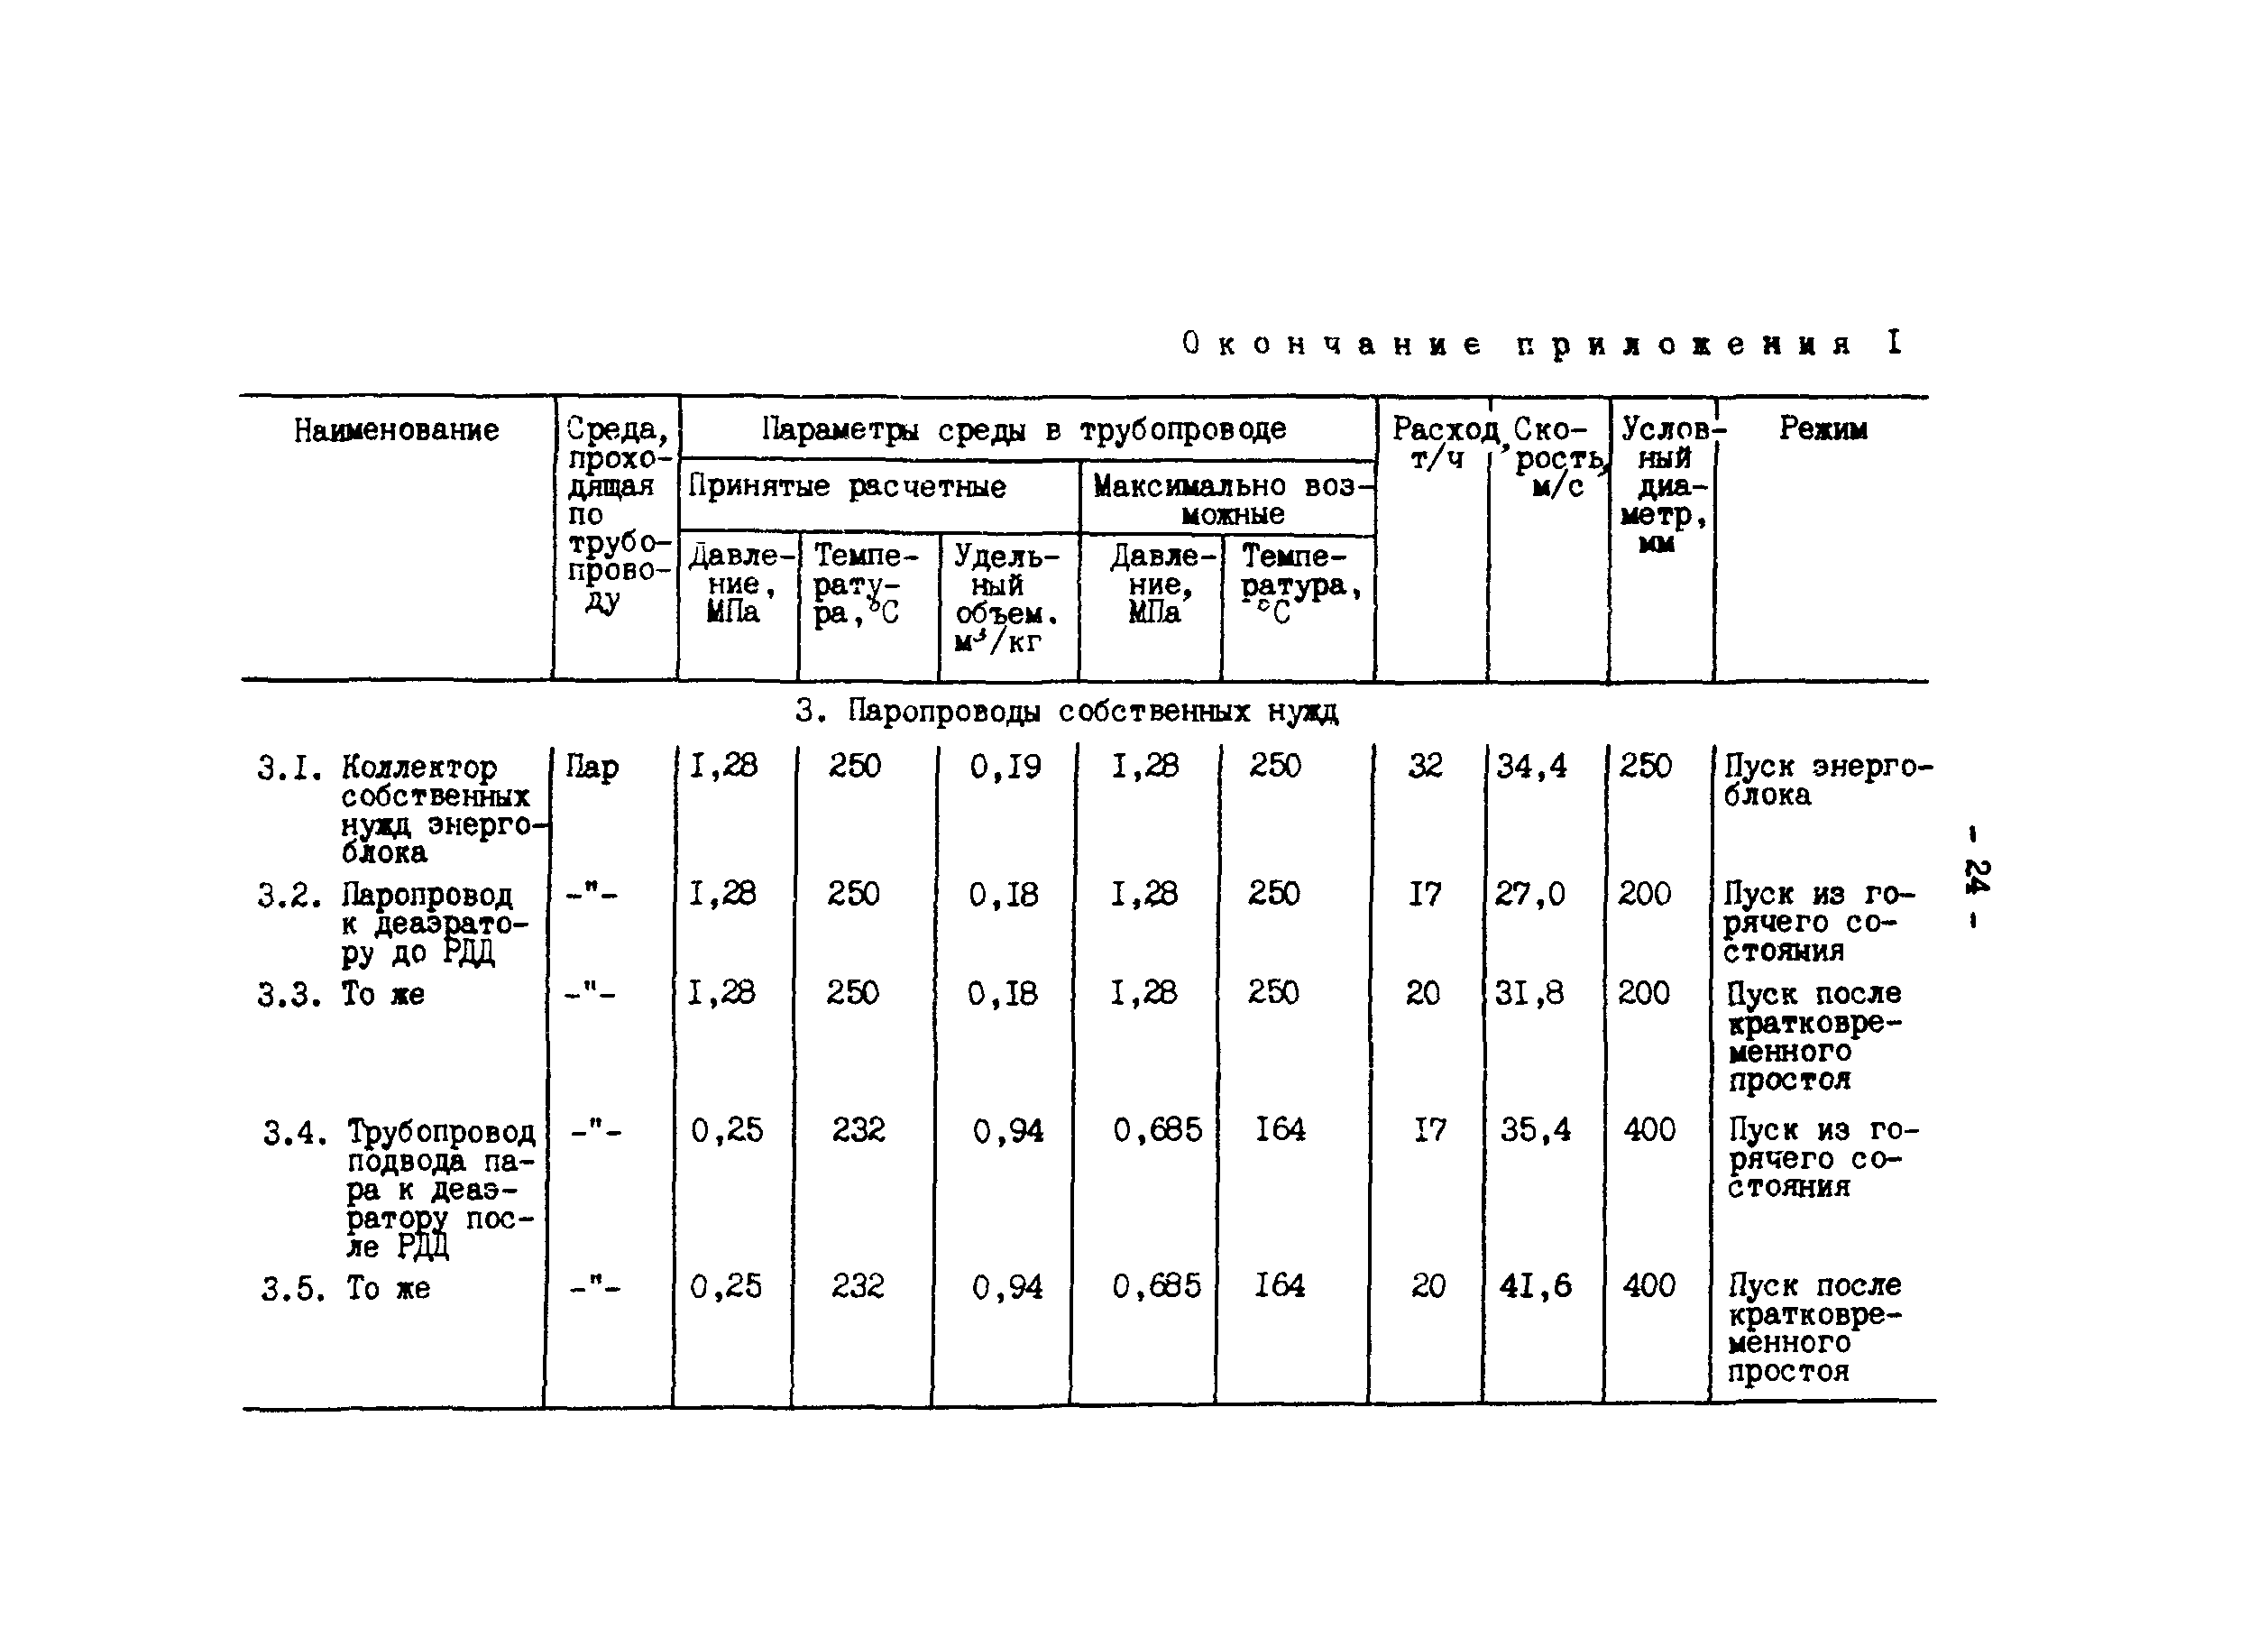 РД 34.25.102-87